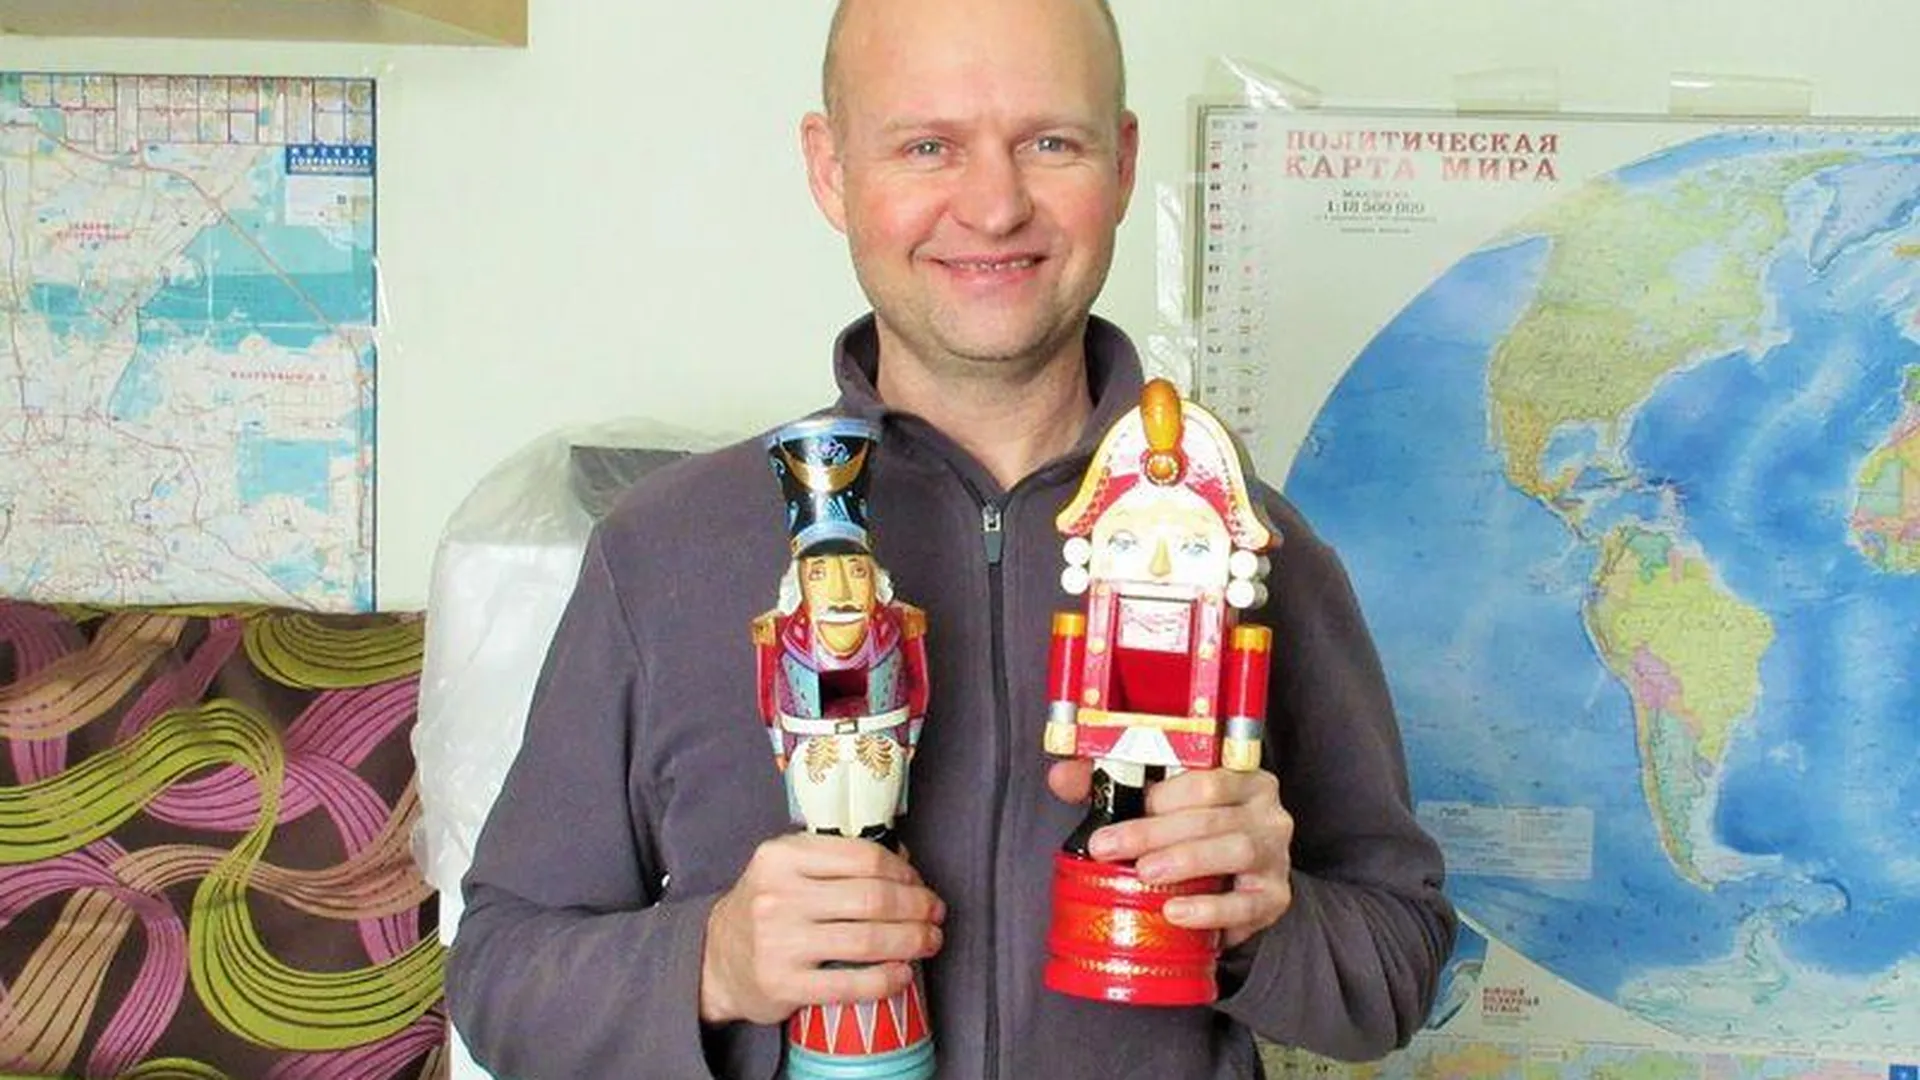 Александр Мельникович: «Через игрушки погружаешься в мир сказочного образа»